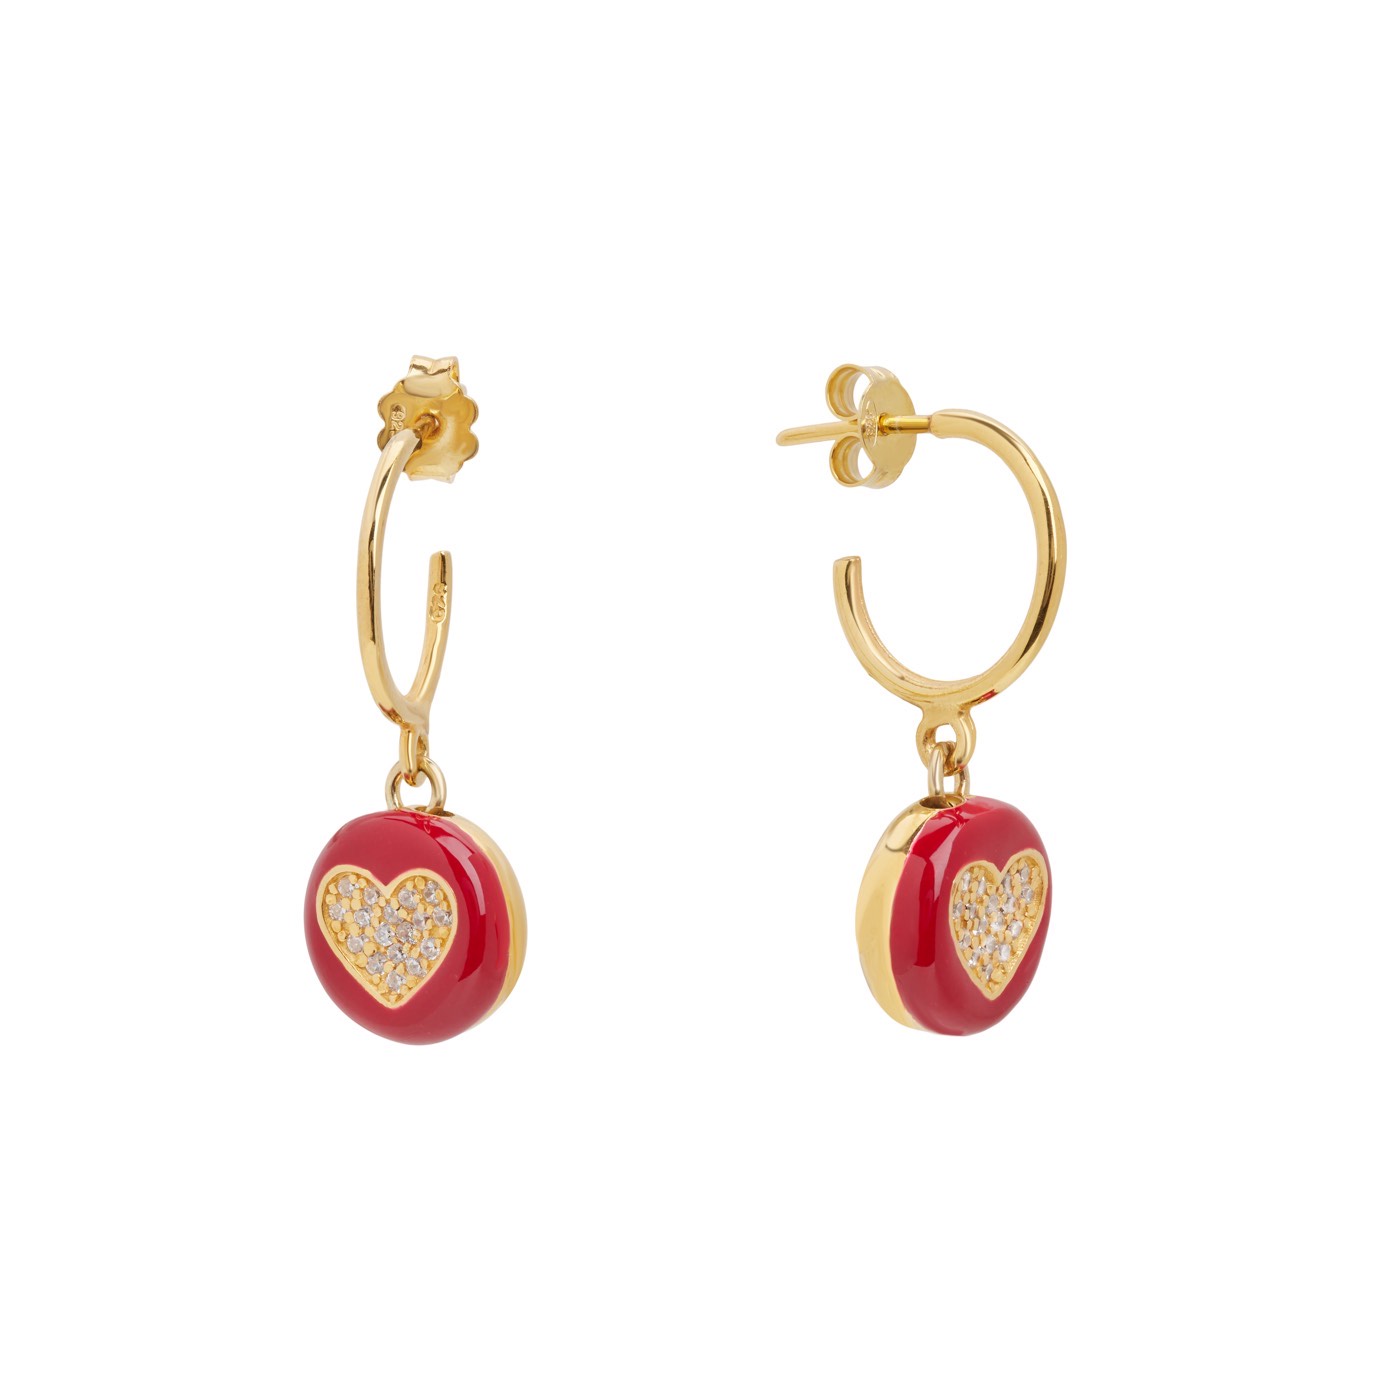 Σκουλαρίκια από ασήμι 925 με κόκκινο σμάλτο και καρδιά με ζιργκόν - Η καρδιά